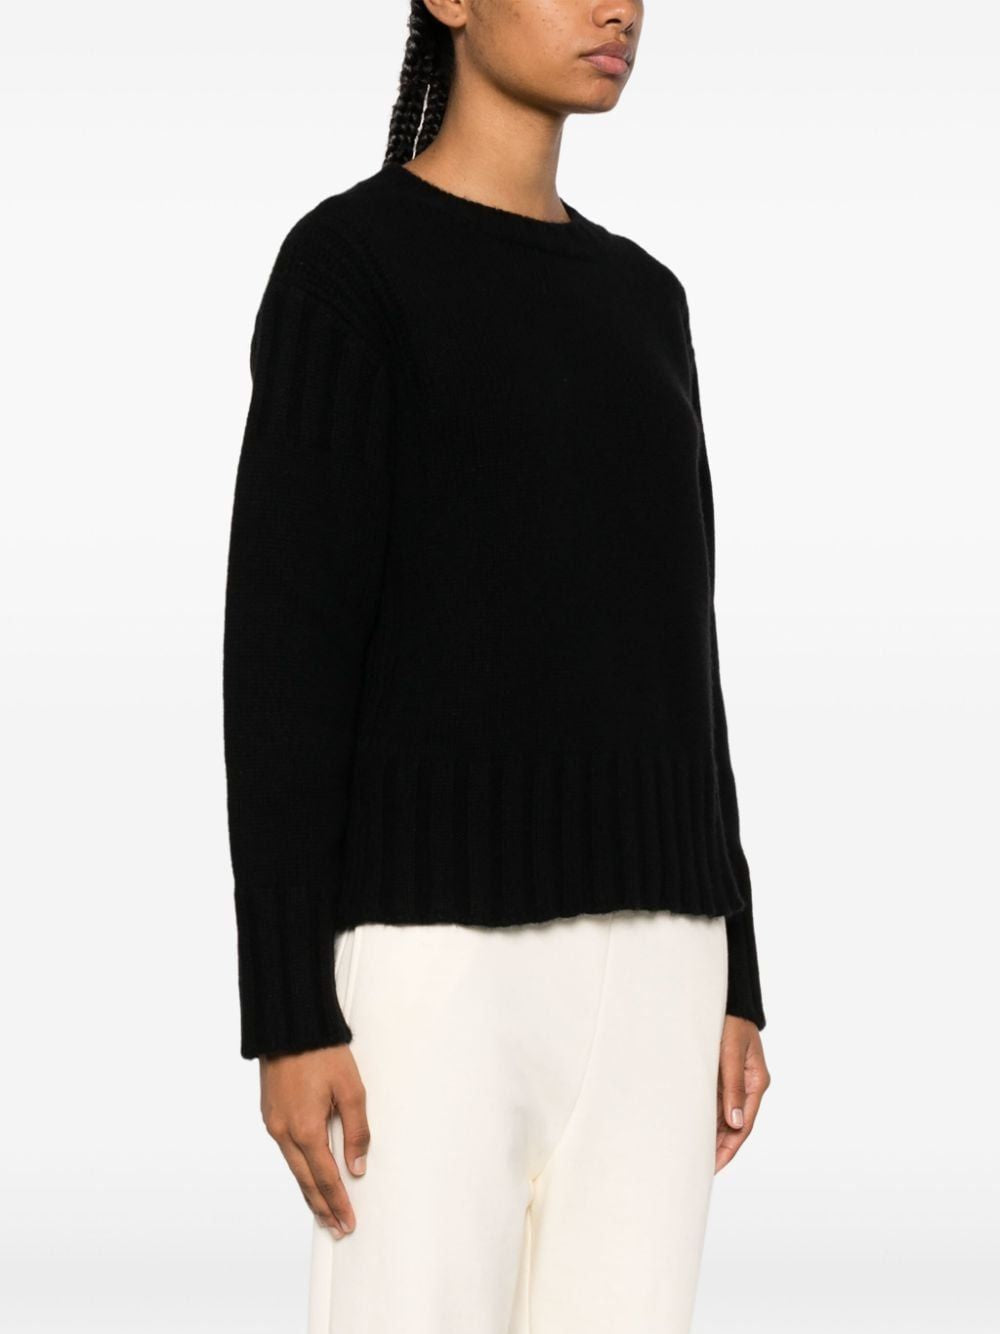 俐落時尚的黑色網紋羊毛衫 - FW23系列